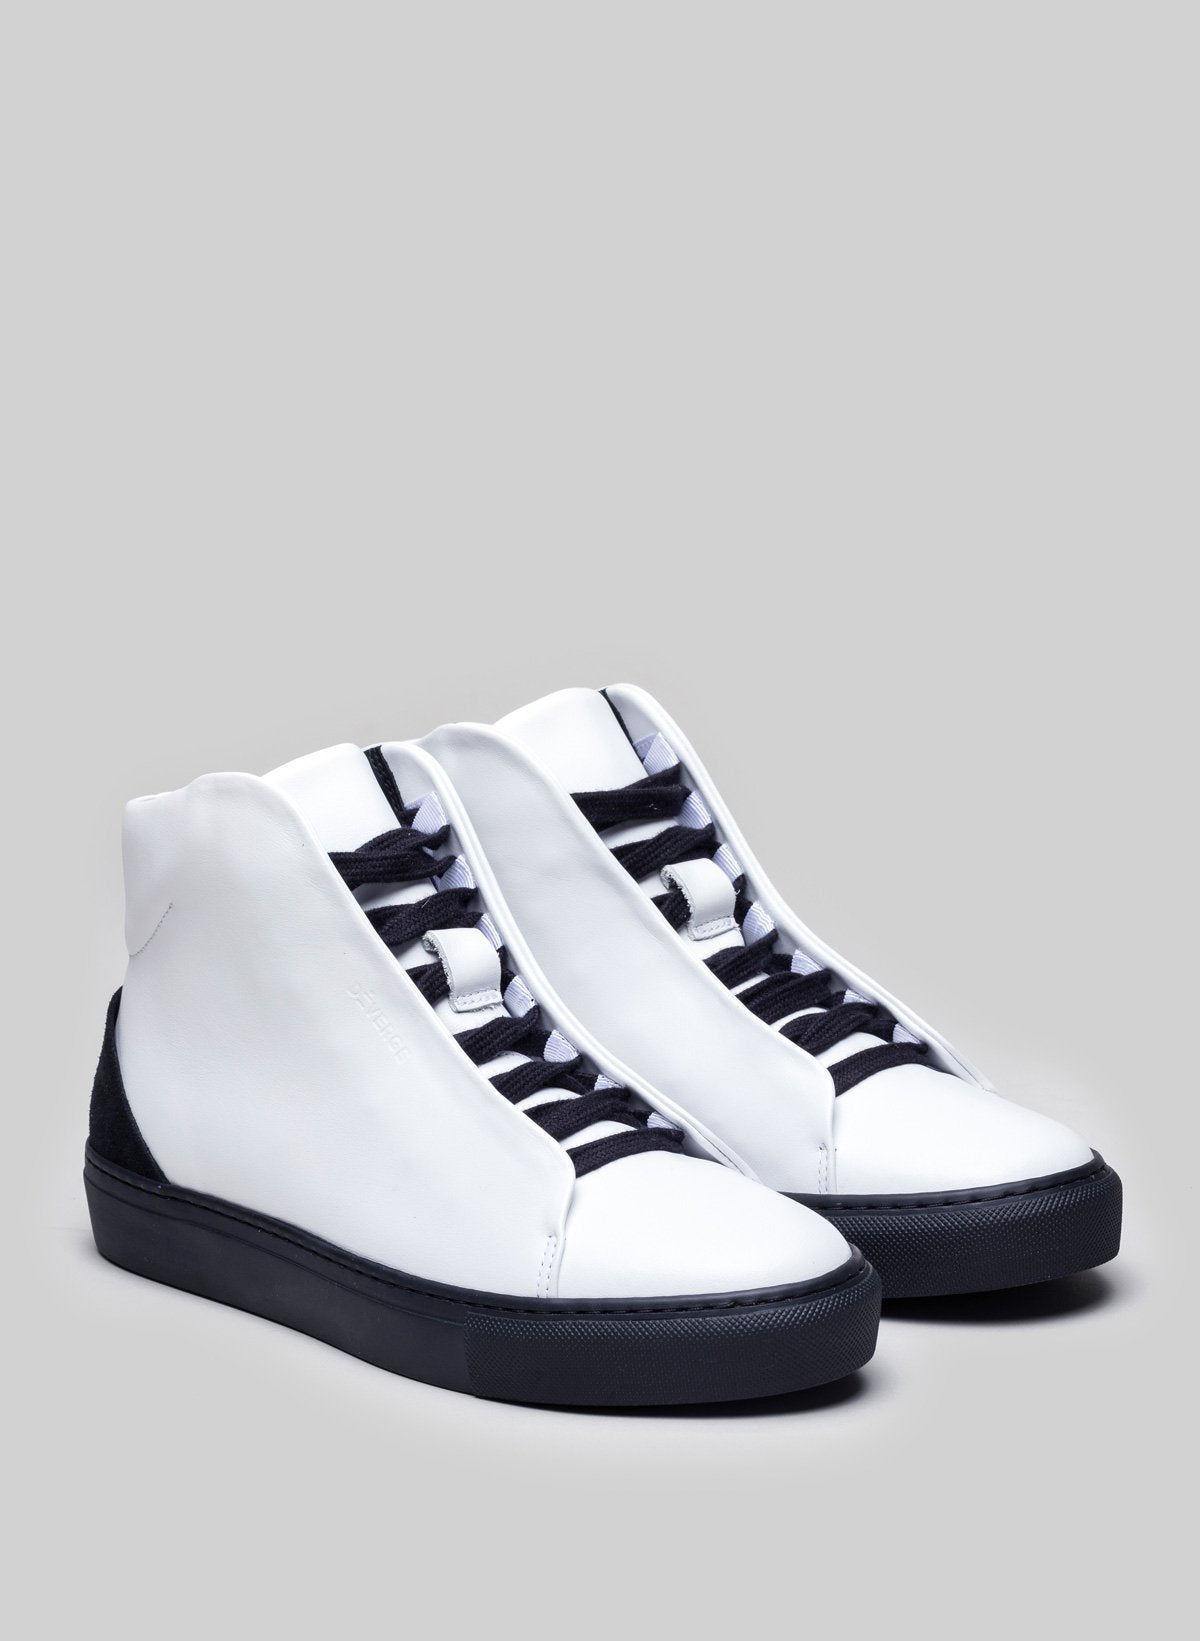 Scarpe alte bianche sneakers con suole e lacci neri, personalizzate da Diverge.